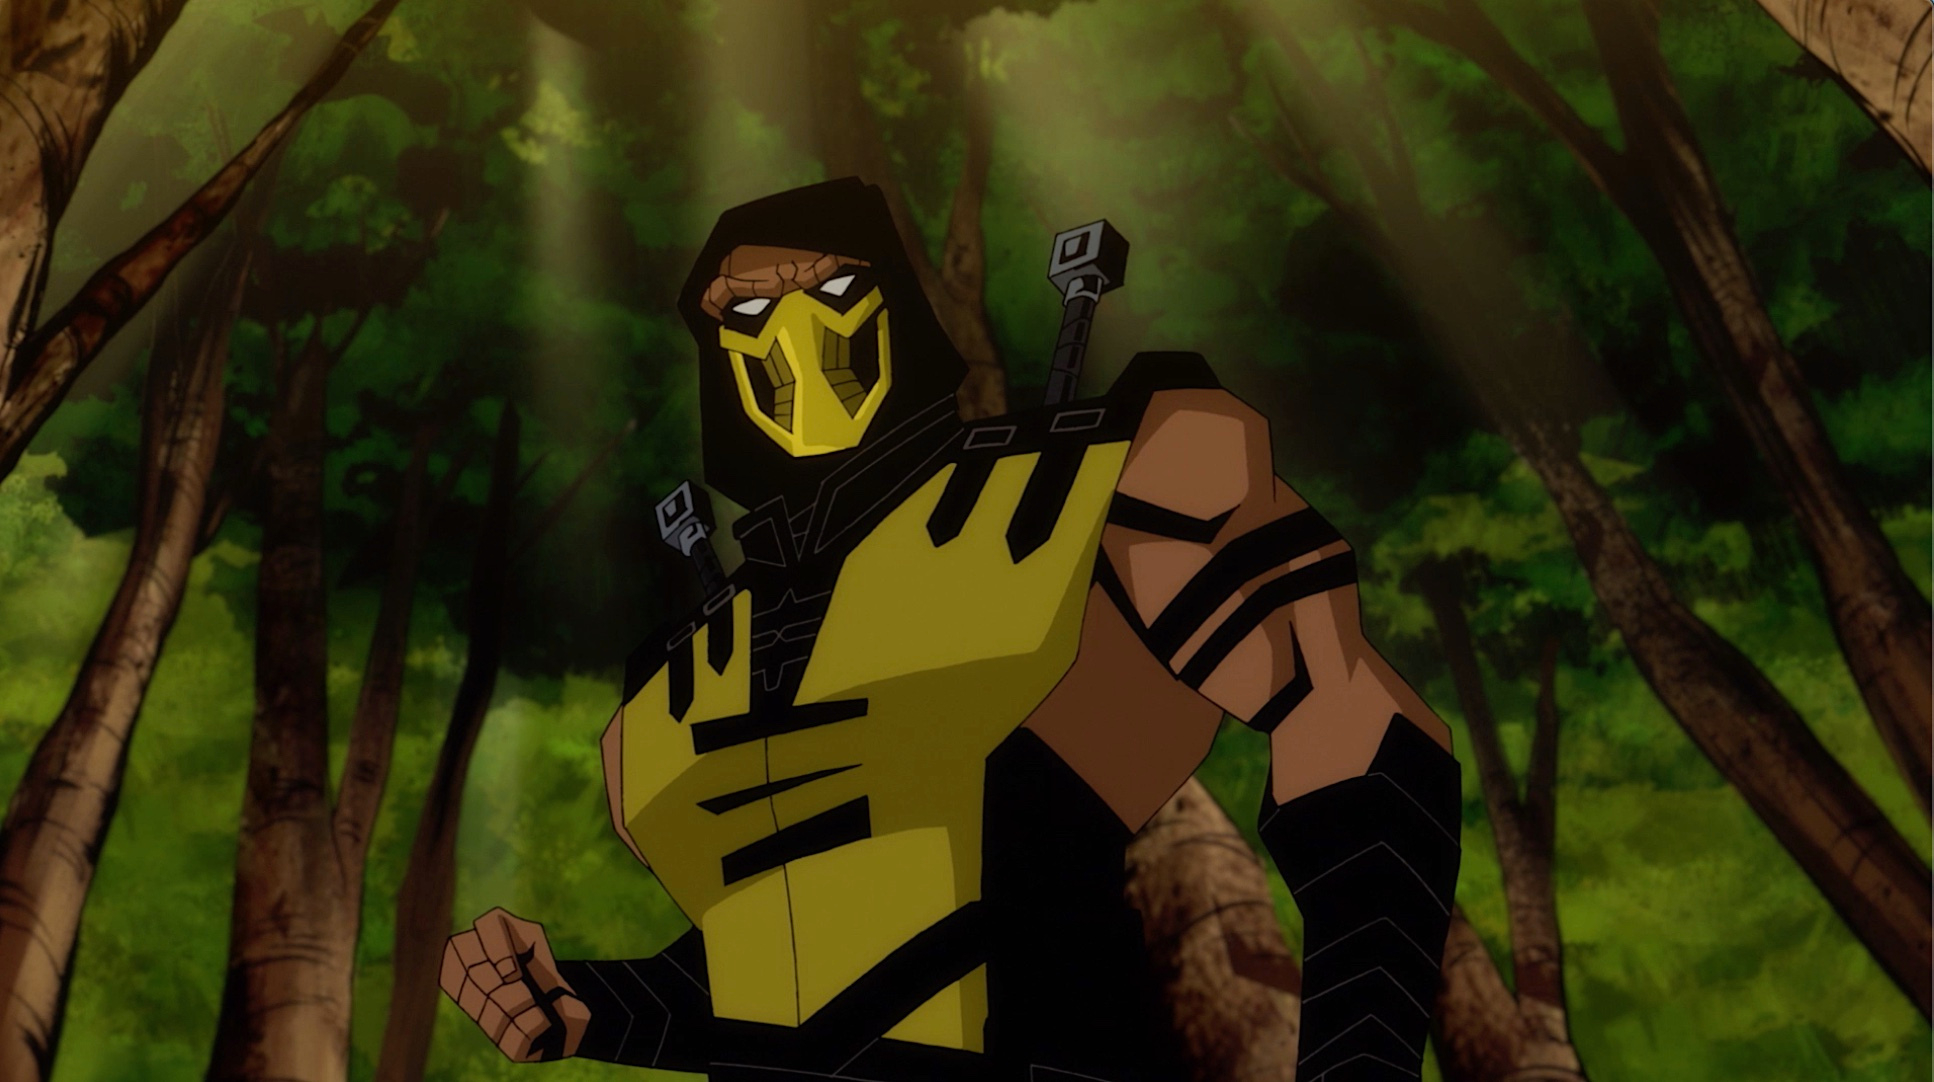 Премьера анимационного фильма Mortal Kombat Legends: Battle of the Realms состоится 31 августа